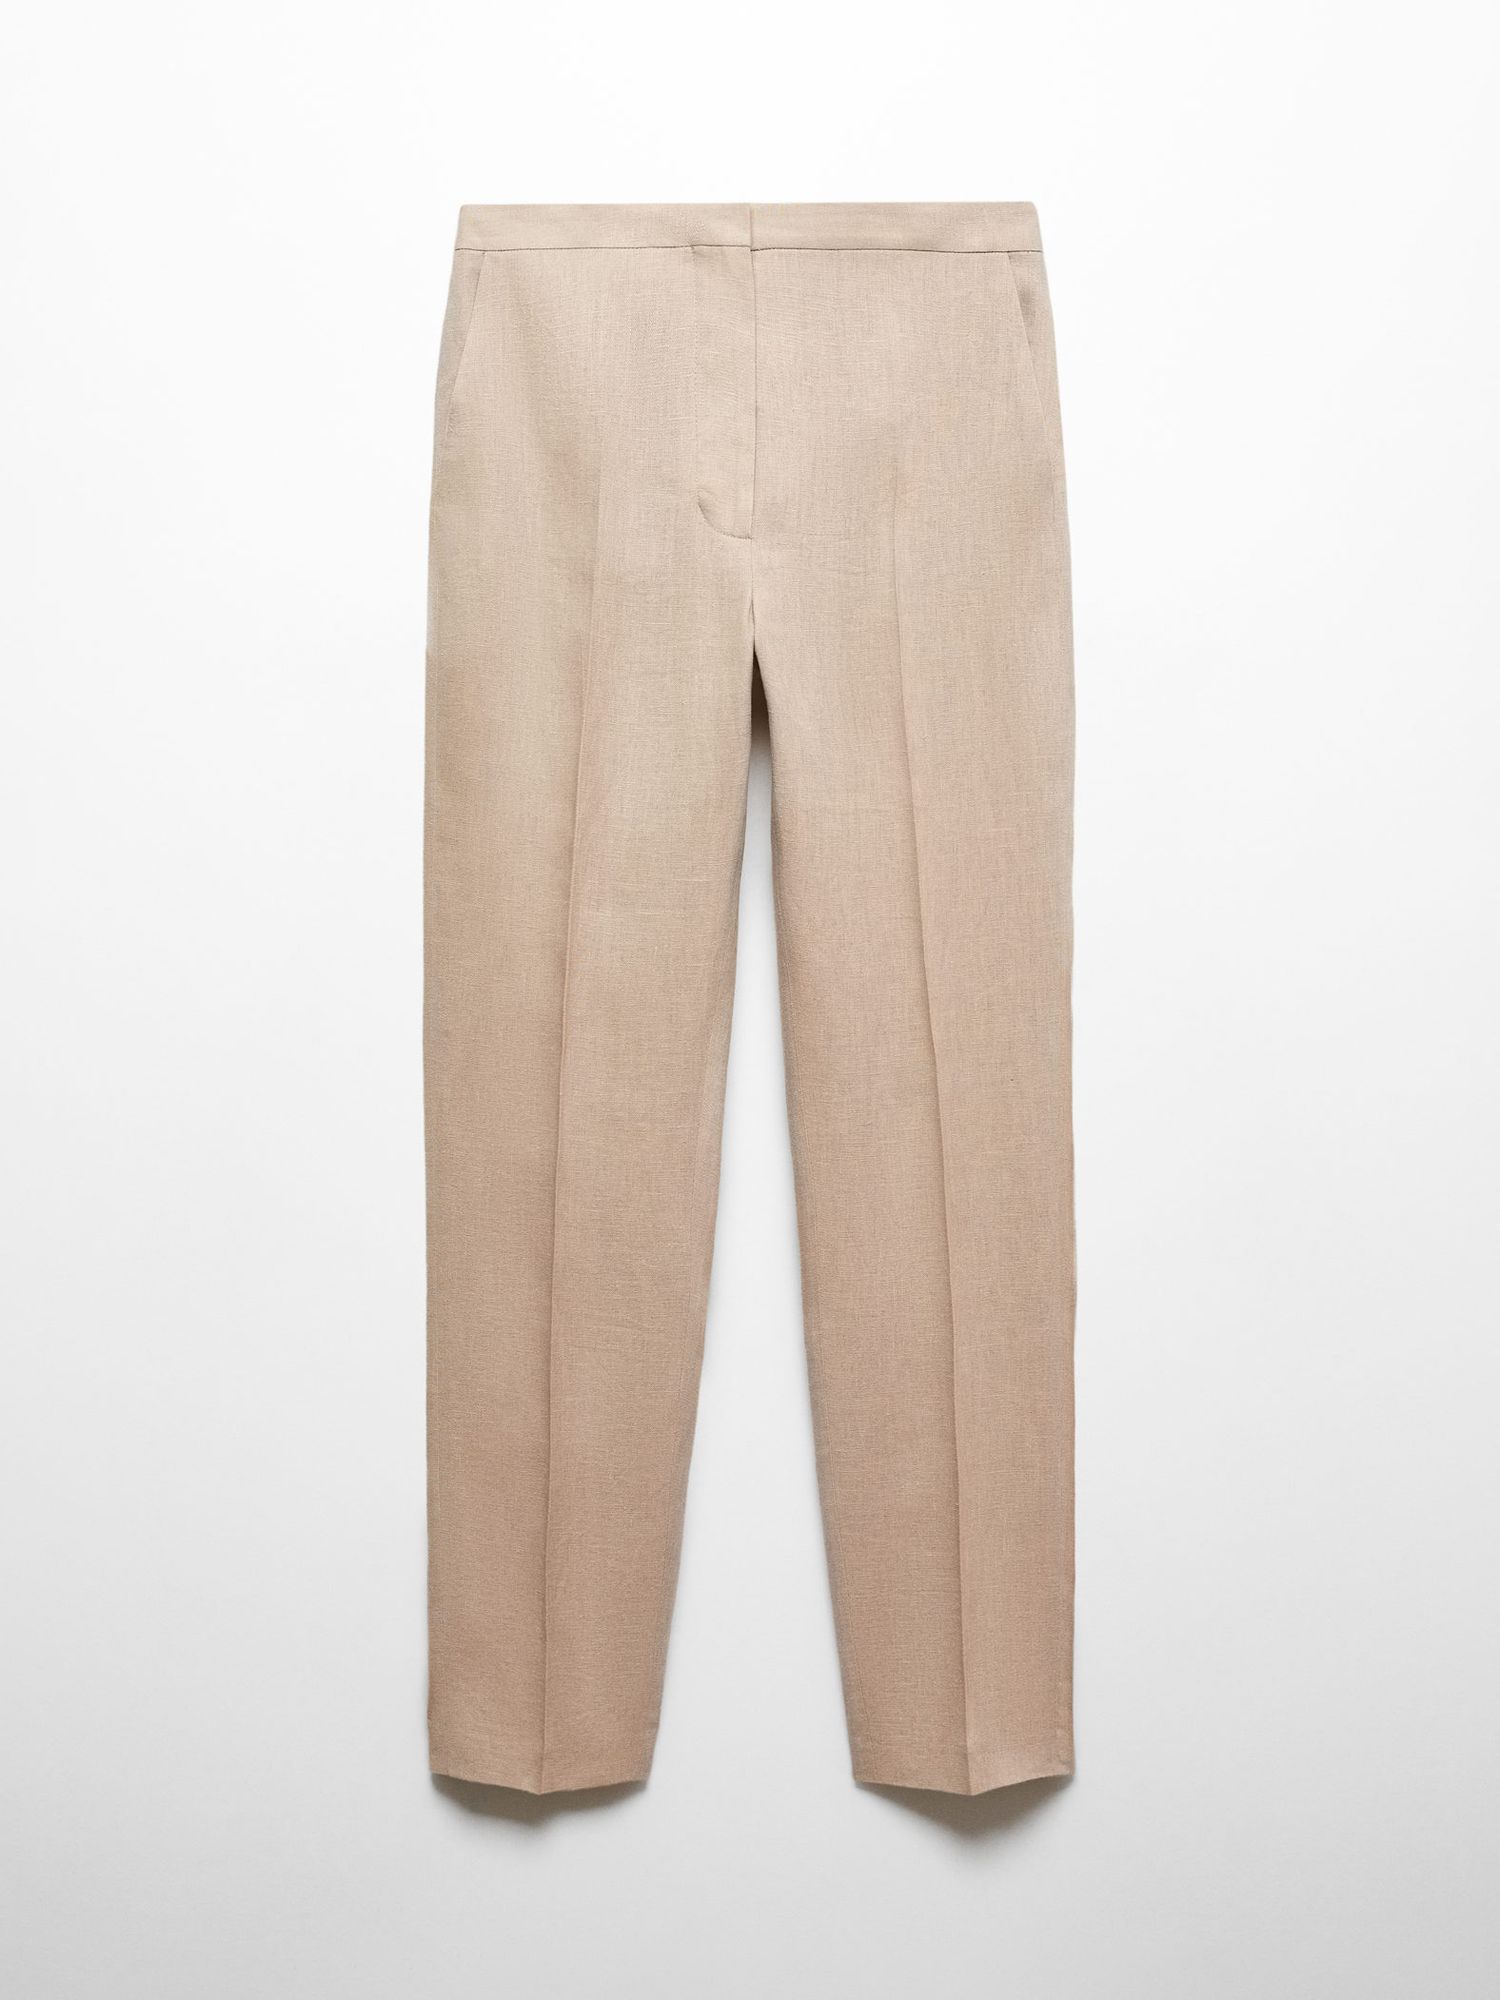 Mango Tempoli Linen Suit Trousers, Pastel Grey, L